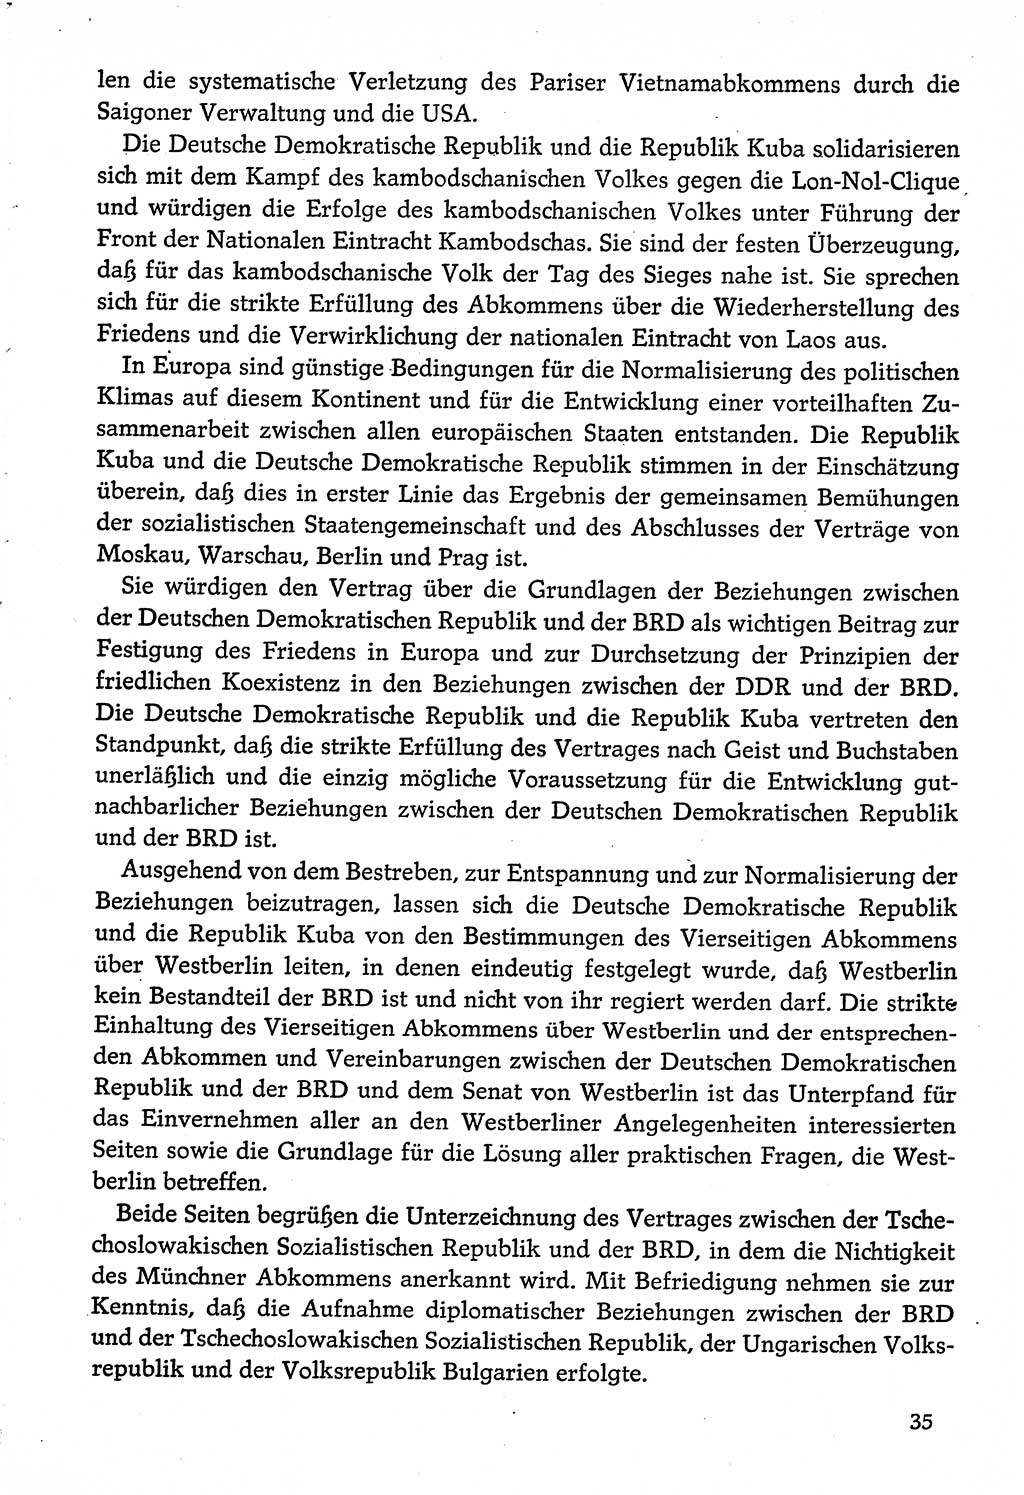 Dokumente der Sozialistischen Einheitspartei Deutschlands (SED) [Deutsche Demokratische Republik (DDR)] 1974-1975, Seite 35 (Dok. SED DDR 1978, Bd. ⅩⅤ, S. 35)